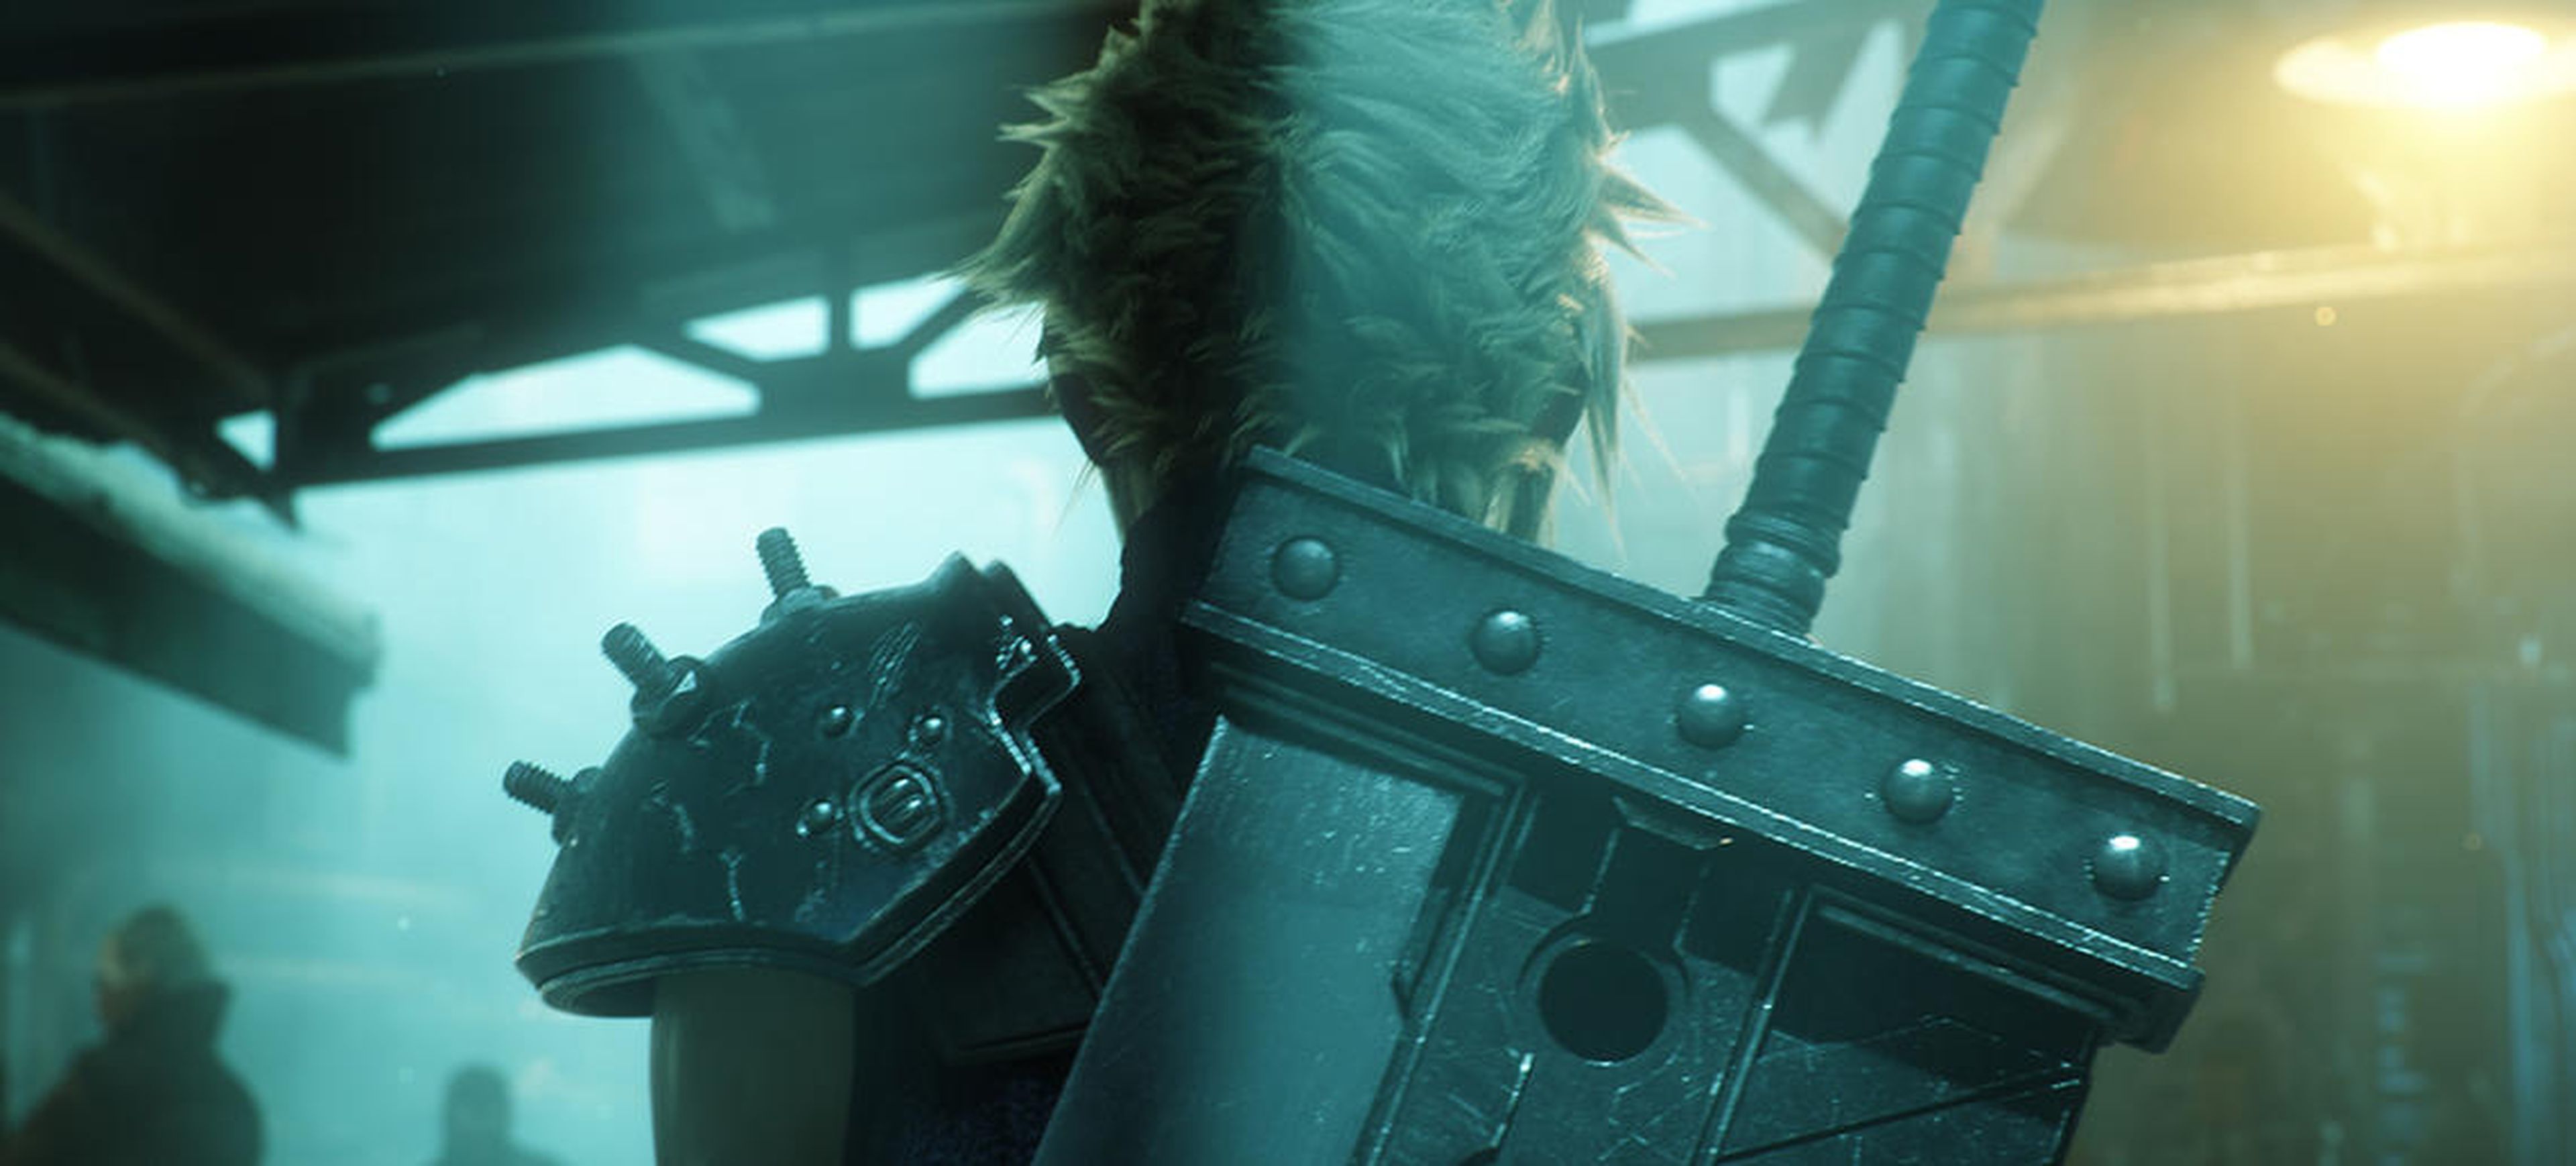 Final Fantasy VII Remake no será el nombre definitivo del juego